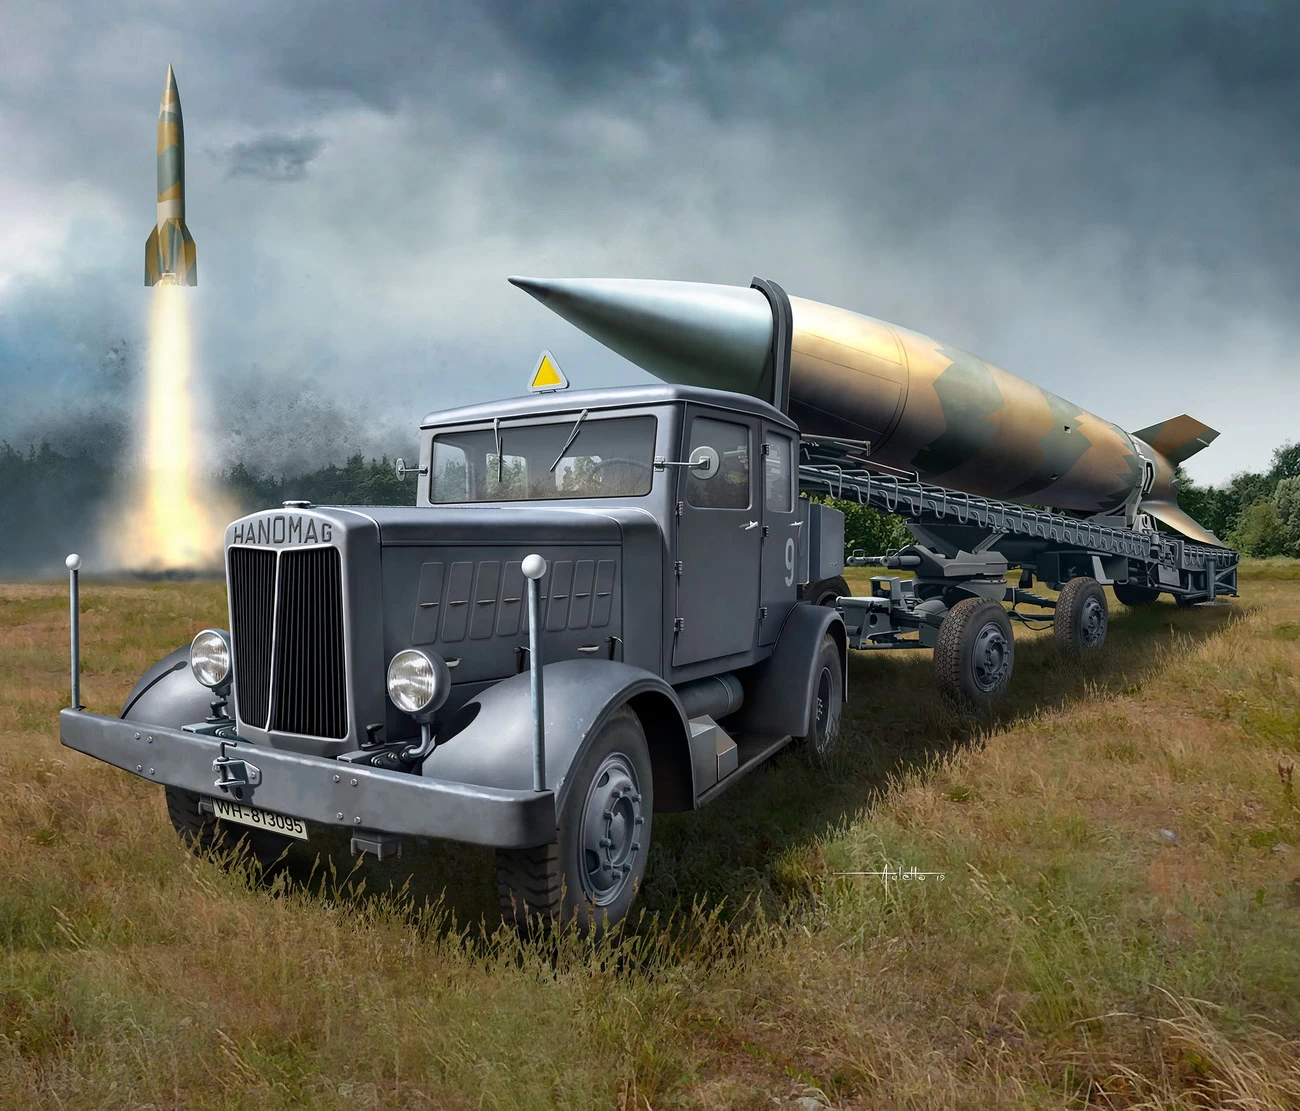 Revell 03310 - SS-100 Gigant + Transporter + V2 / A4 Rakete Modell